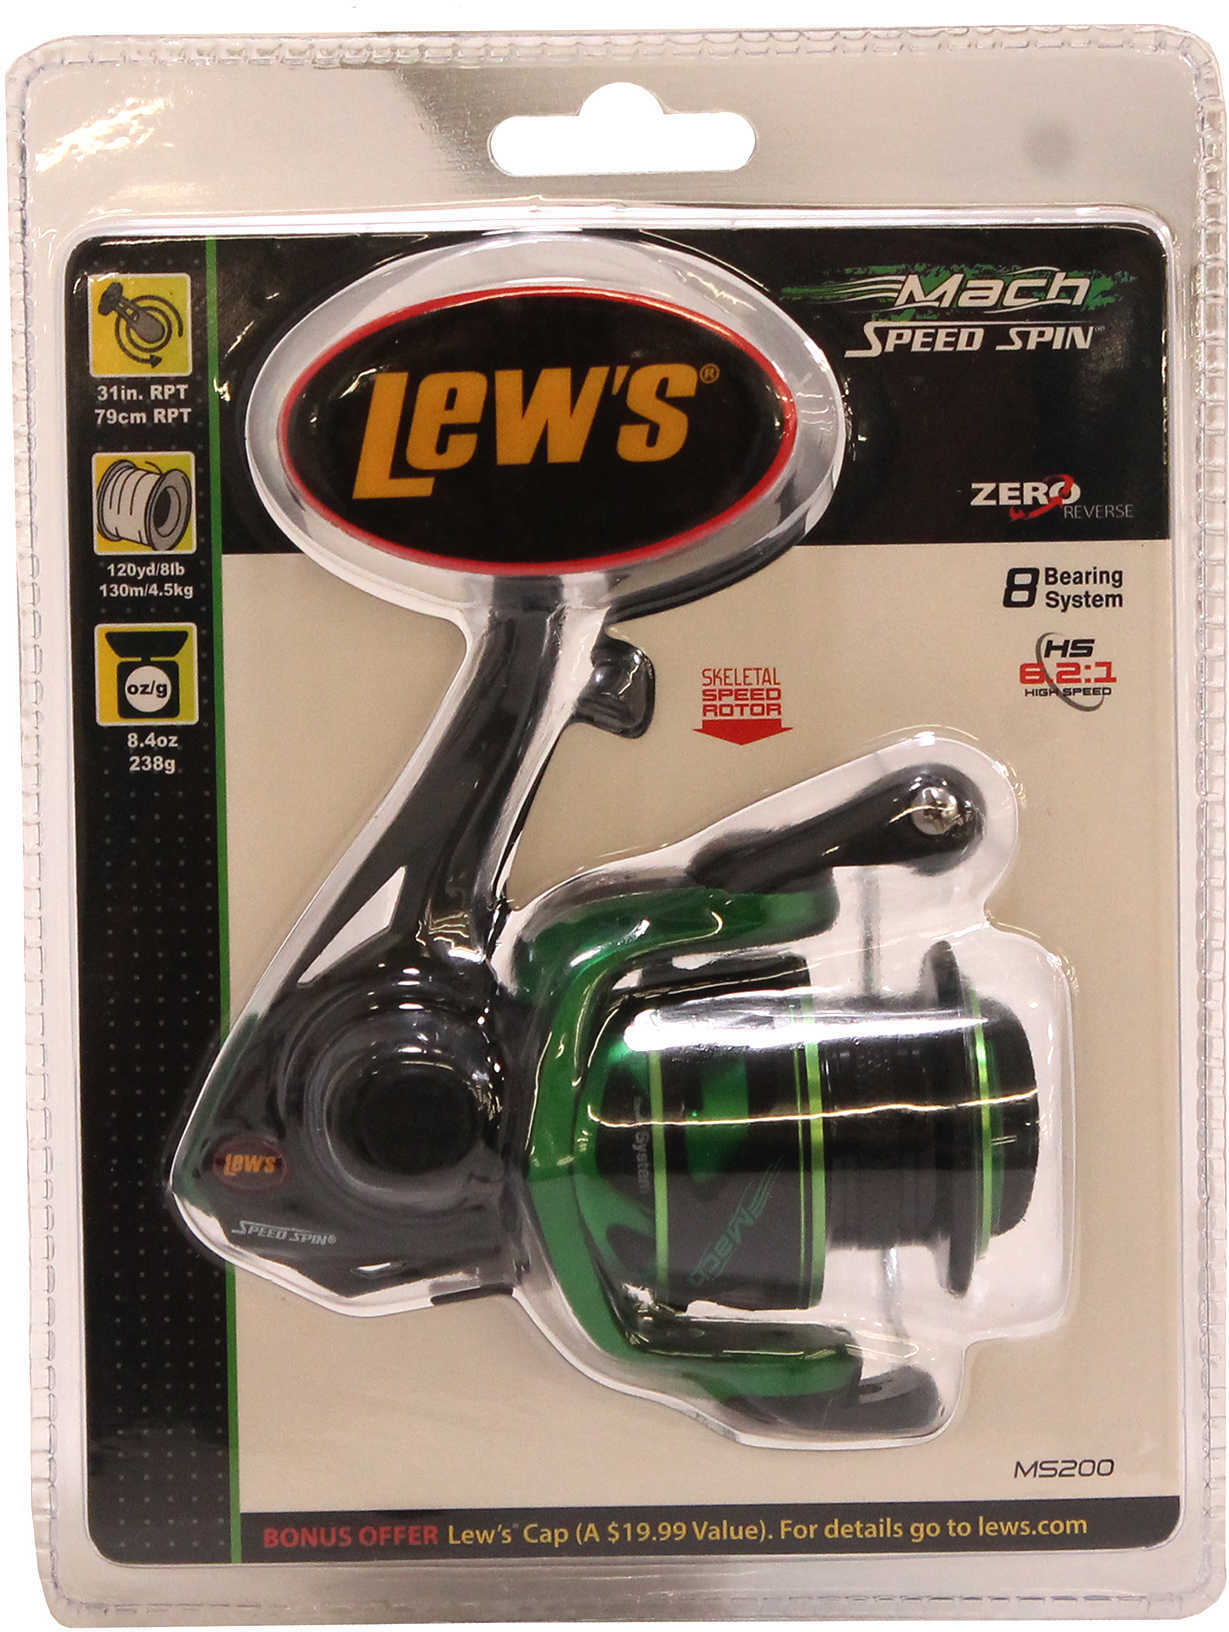 Lews Fishing Mach Speed Spin Spinning Reel 6.2:1 Gear Ratio, 7+1 Bearings, 31" Retrieve Rate, Ambid